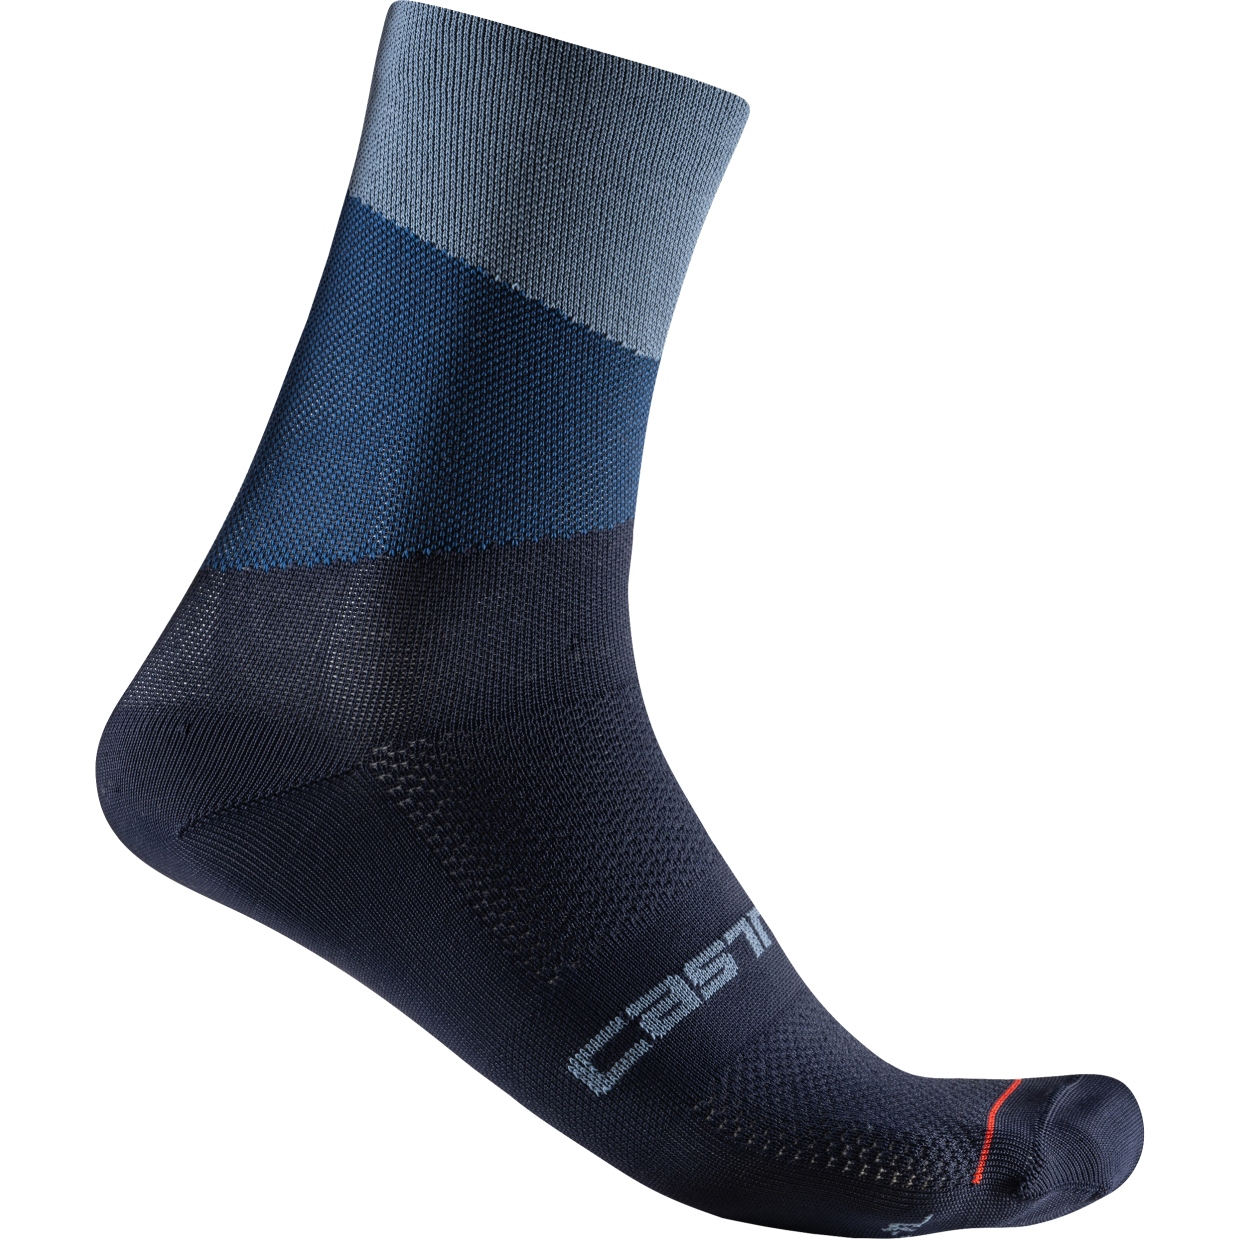 Produktbild von Castelli Orizzonte 15 Socken - light steel blue/belgian blue 062